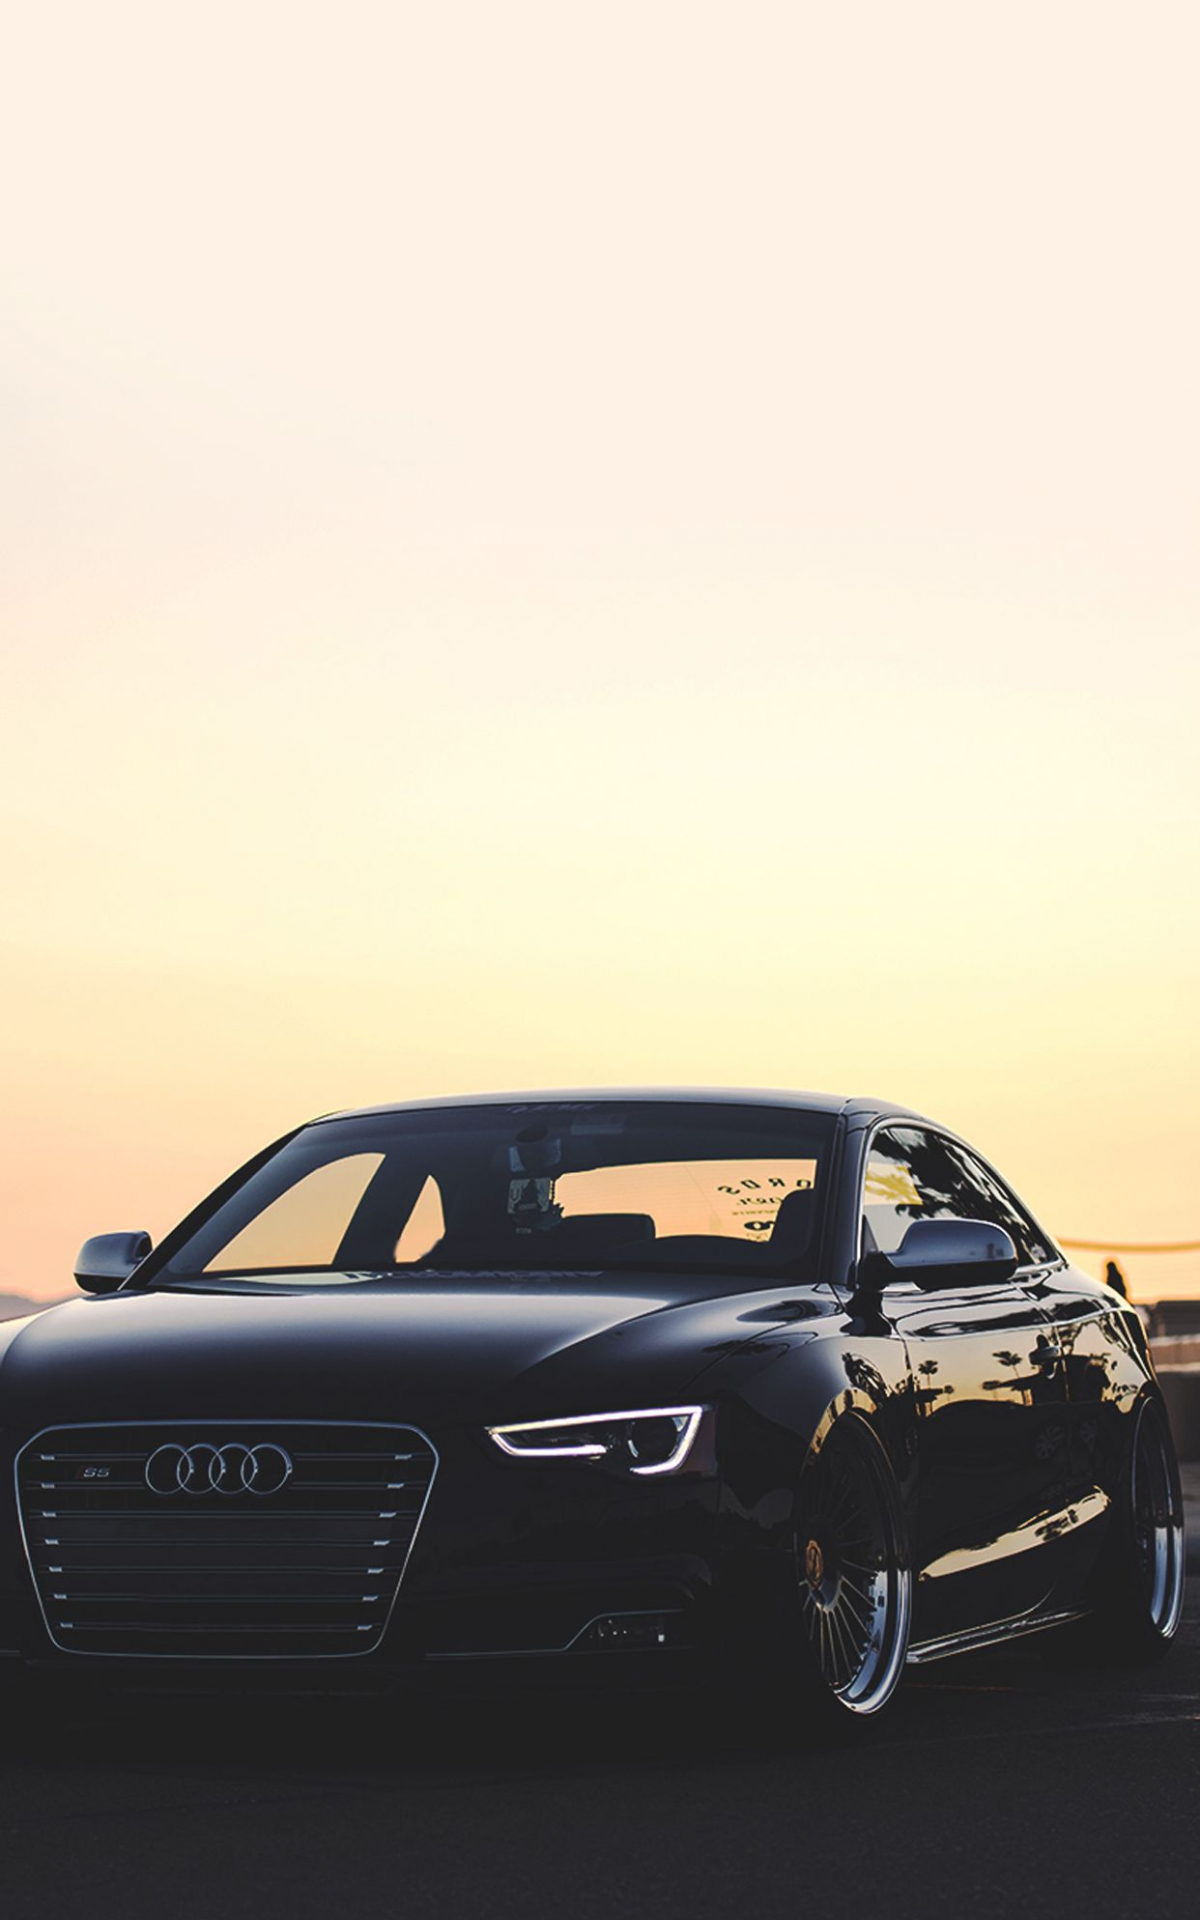 Audi Black Car Wallpapers